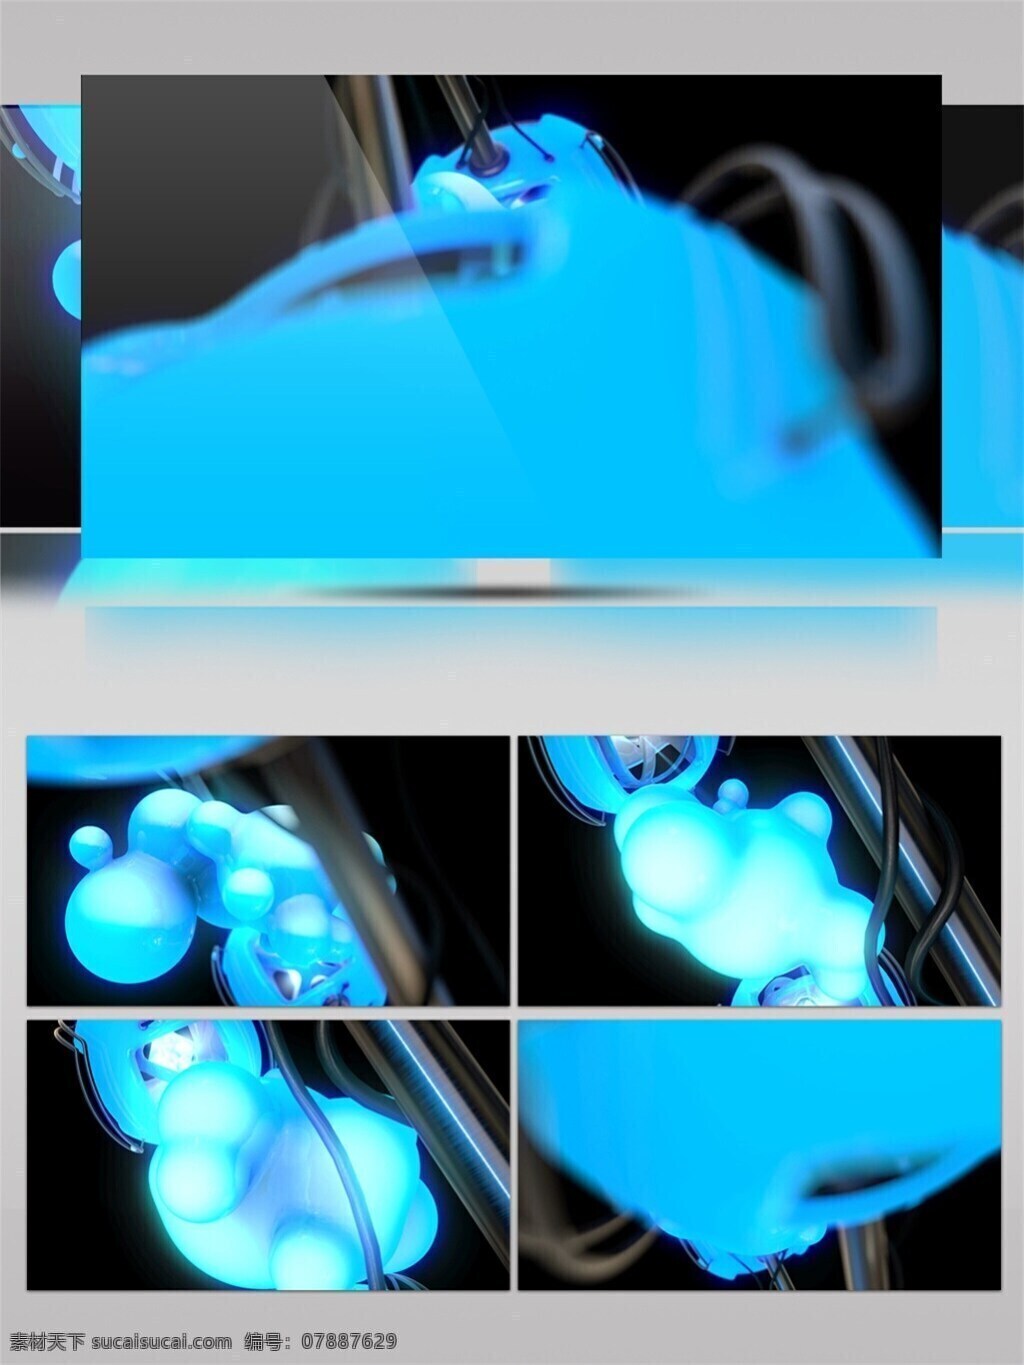 蓝色 光芒 隧道 高清 视频 3d视频素材 酒吧舞台 科幻 特效视频素材 晚会舞台背景 舞台灯光 艺术 宇宙